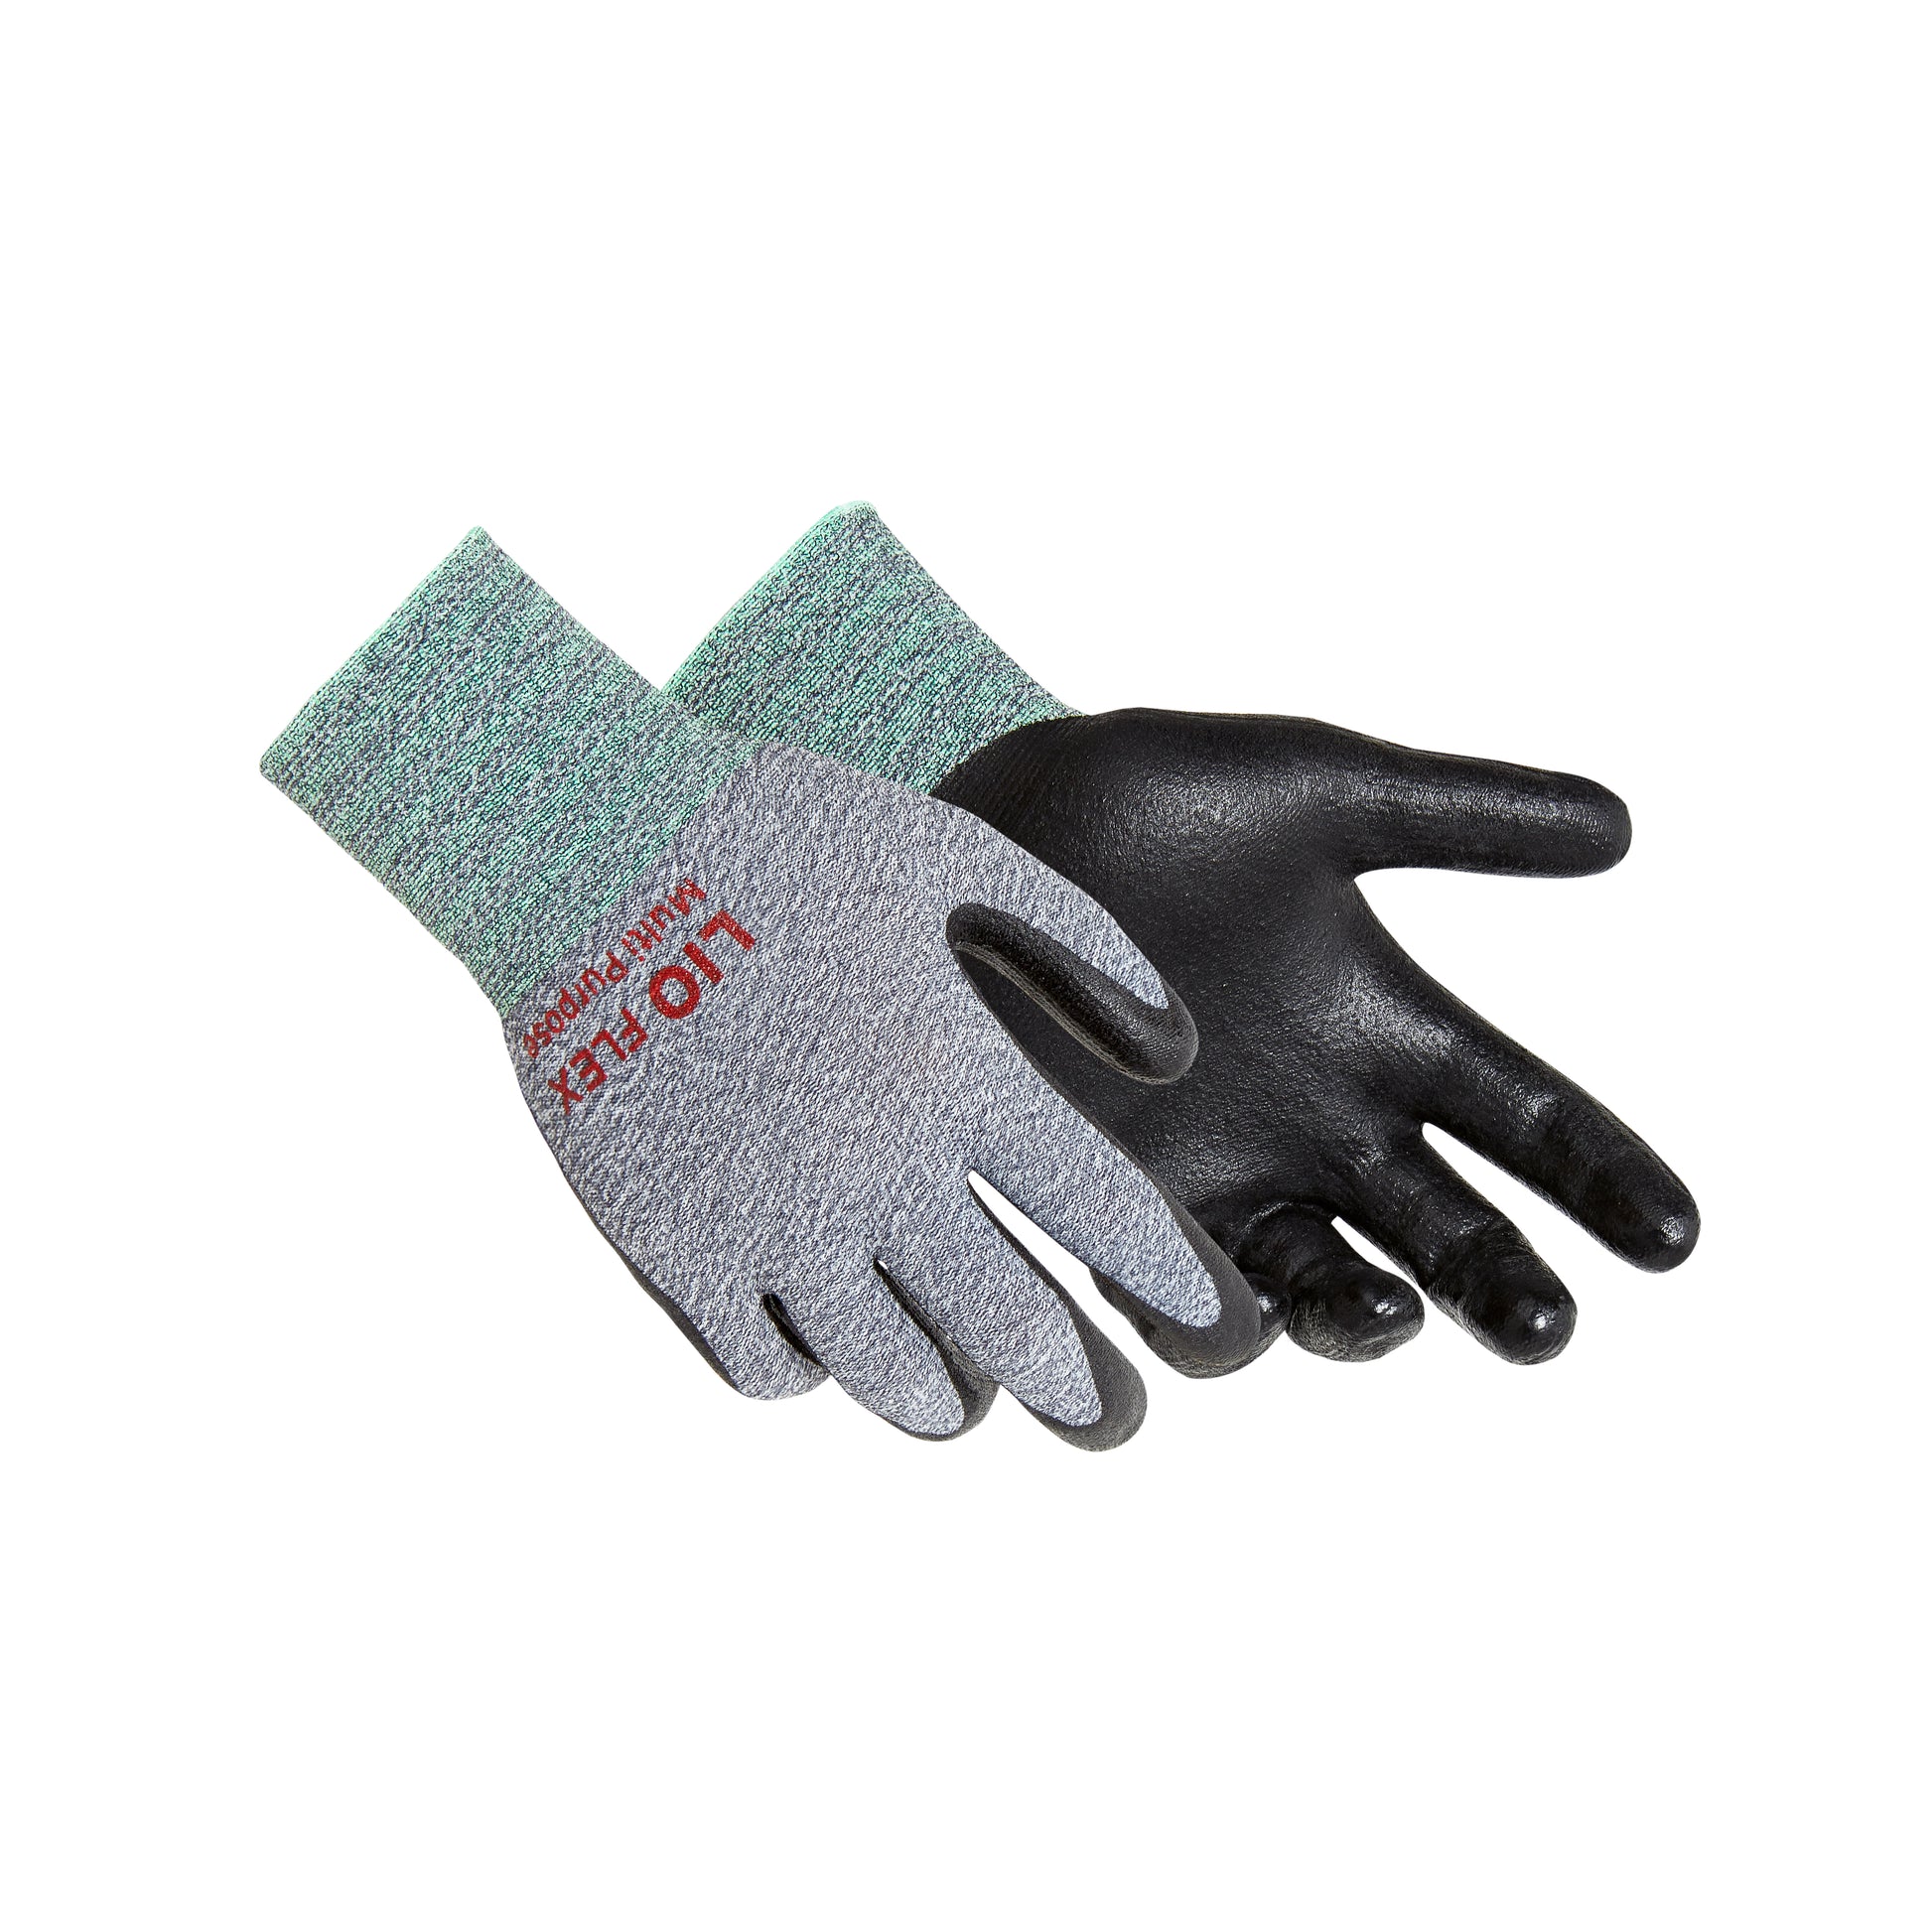 https://lioflex.com/cdn/shop/products/LioFlex_Multi_Purpose_Gloves_Main_2.jpg?v=1604441297&width=1946